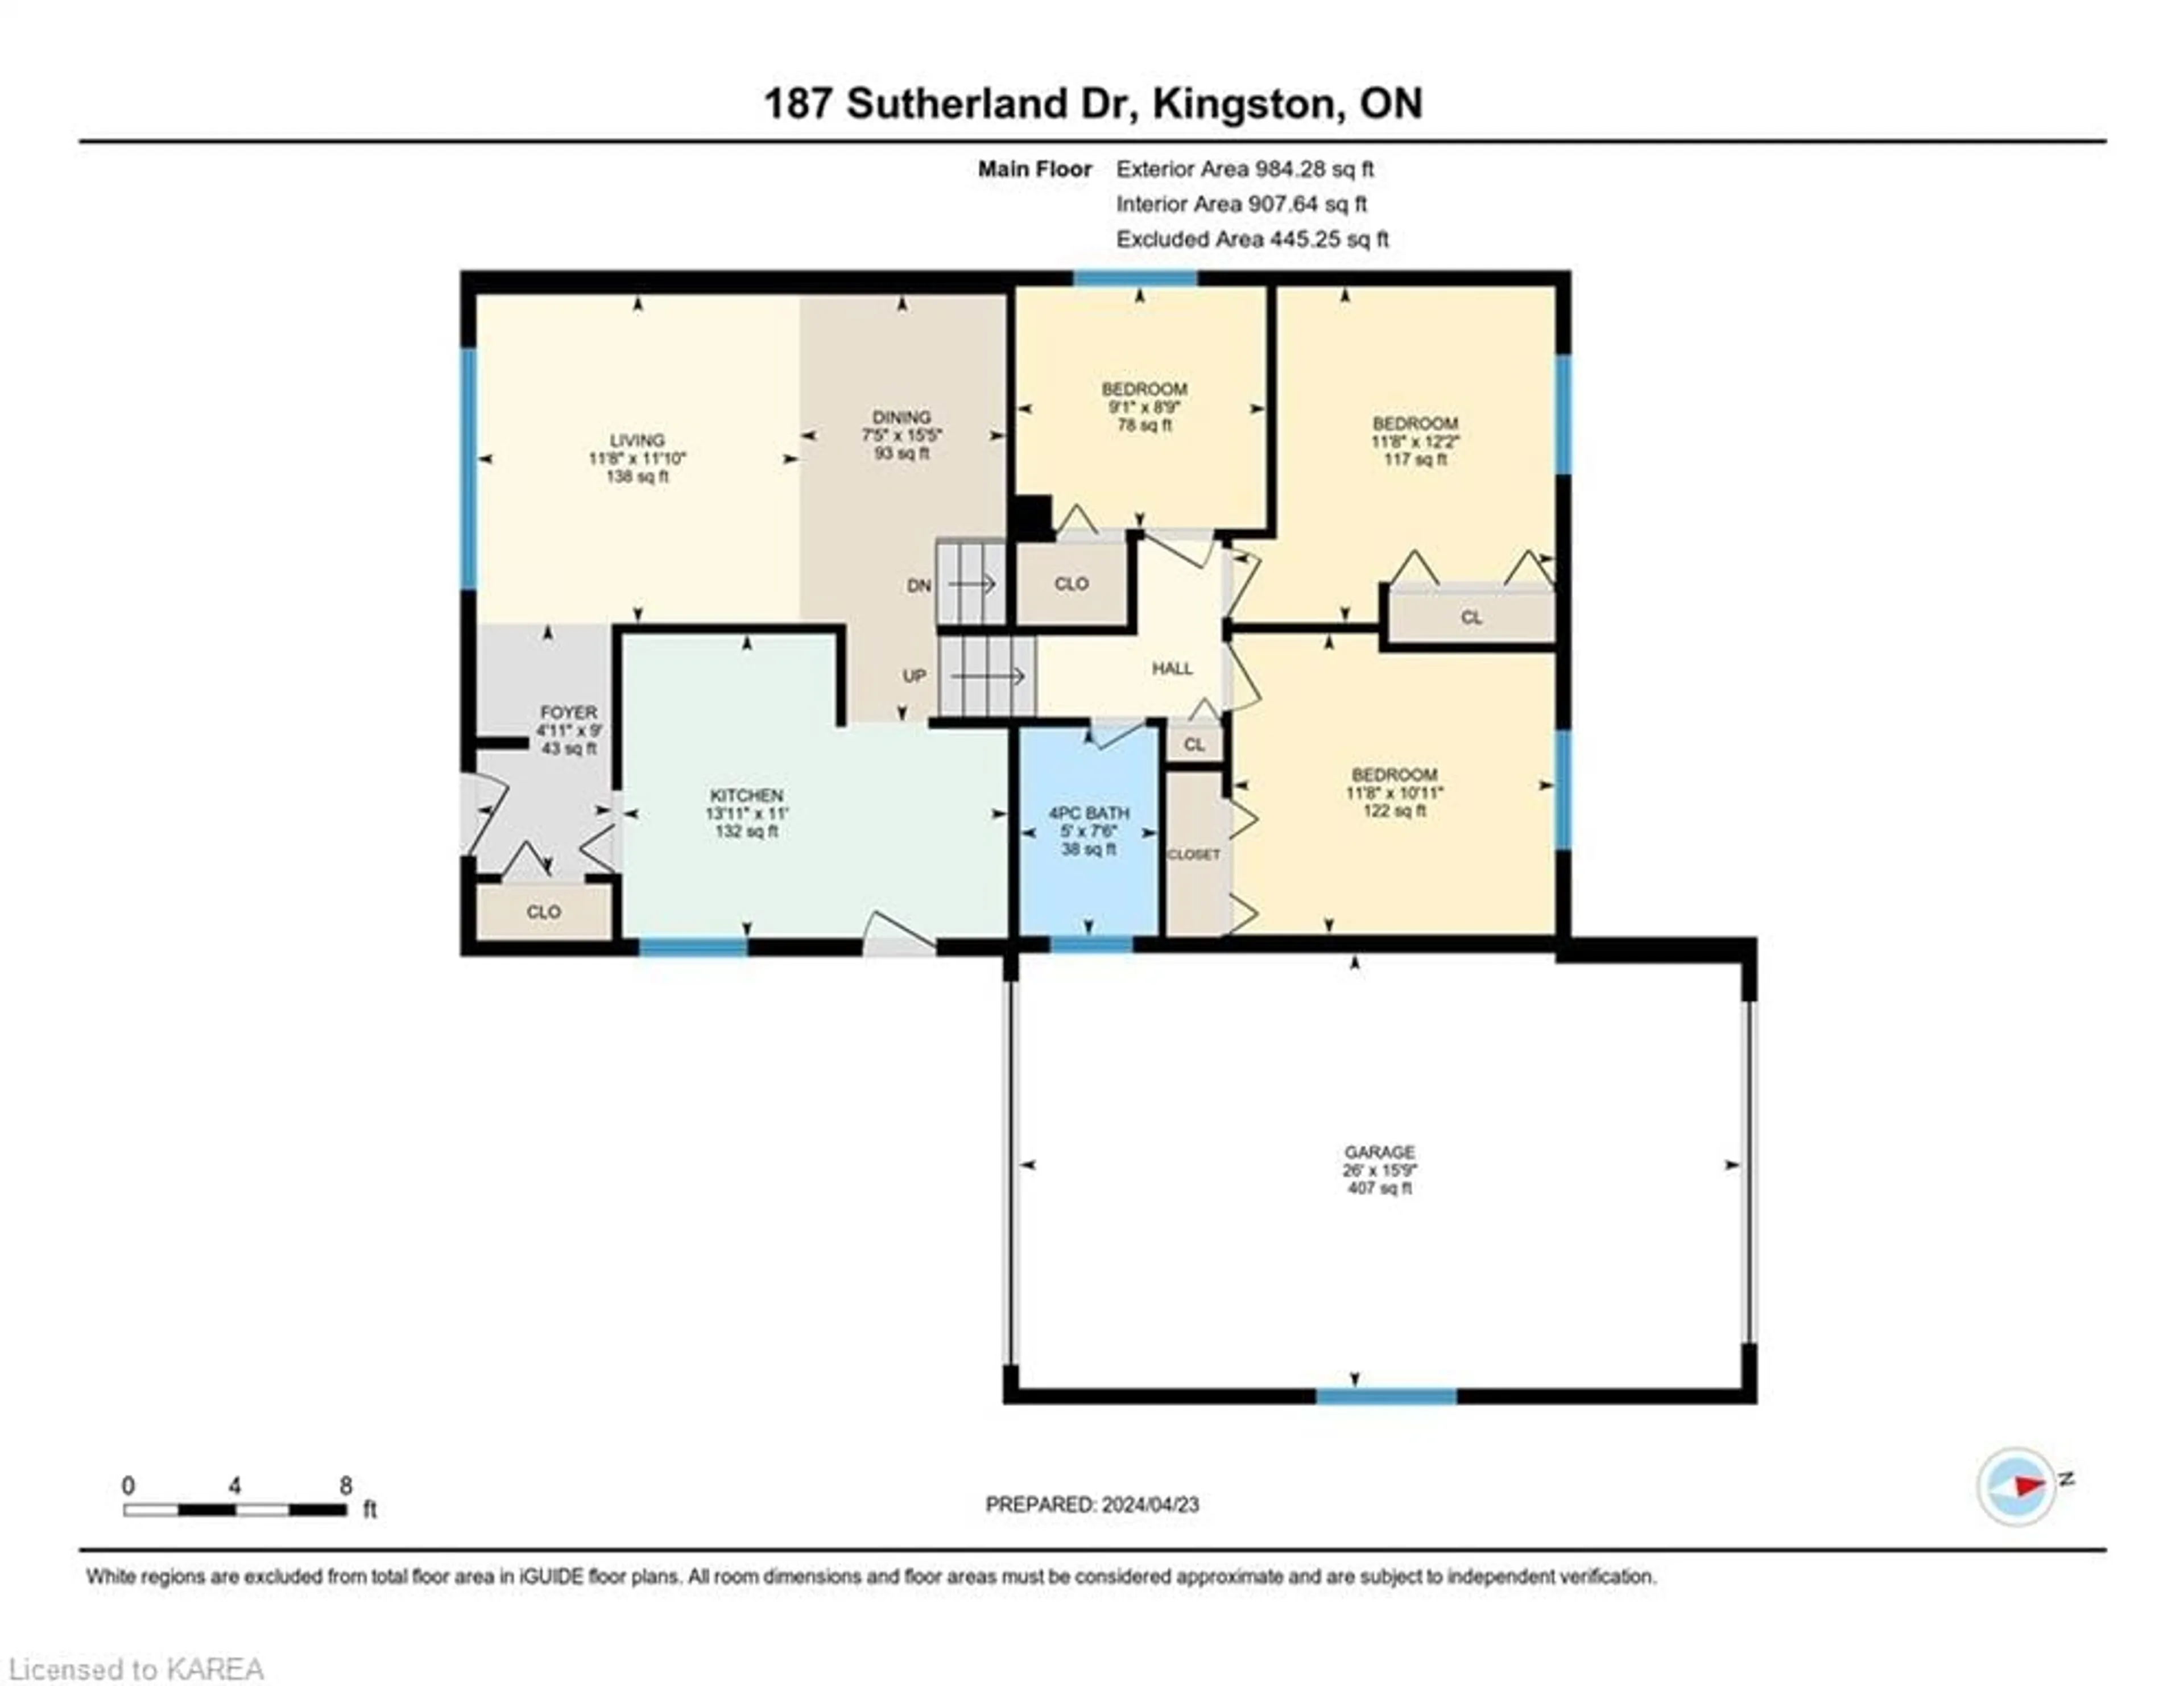 Floor plan for 187 Sutherland Dr, Kingston Ontario K7K 5X6